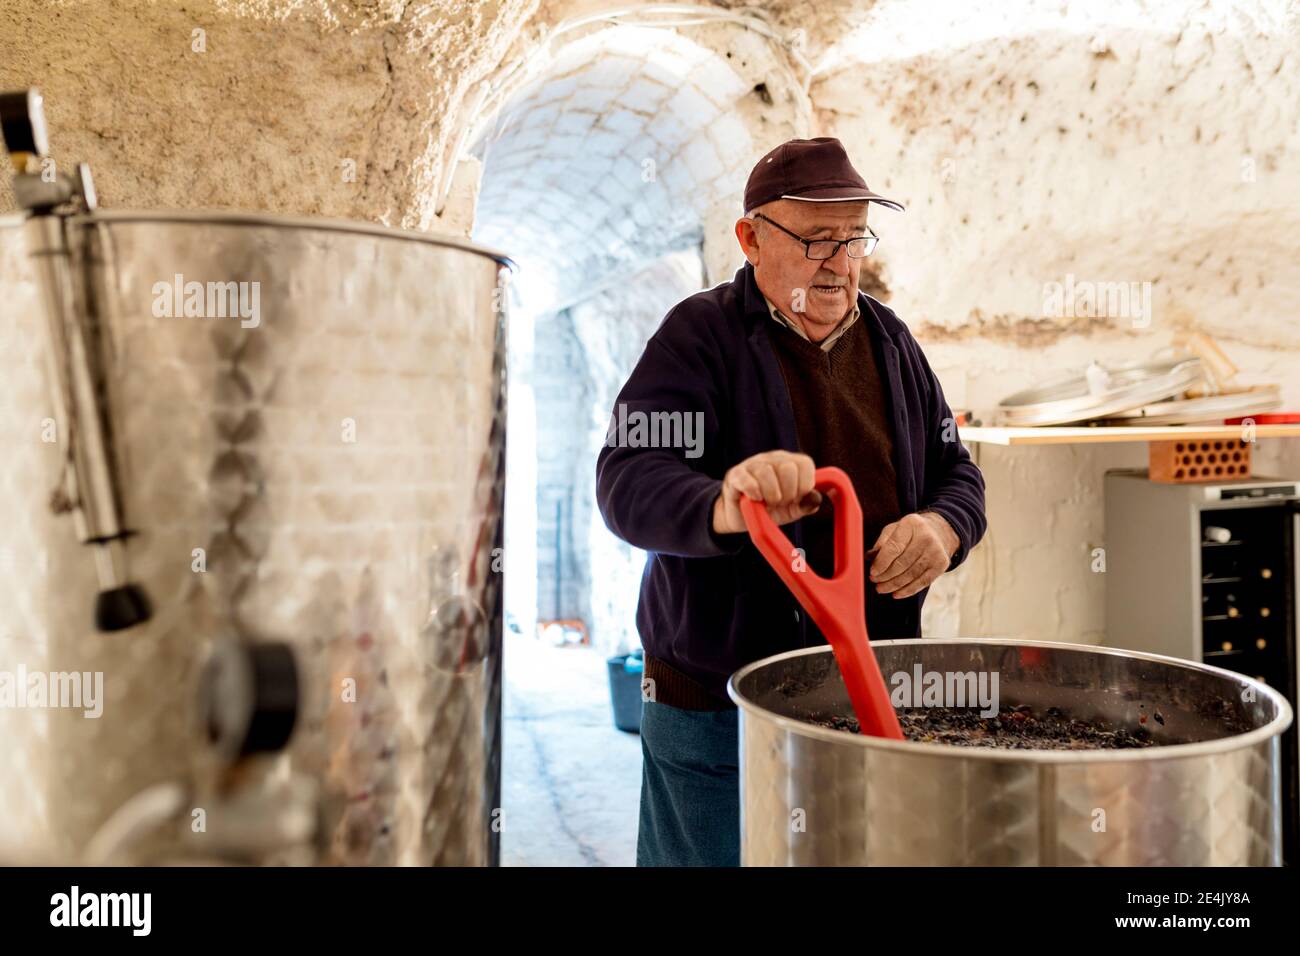 Senior male winemaker preparing wine at winery Stock Photo